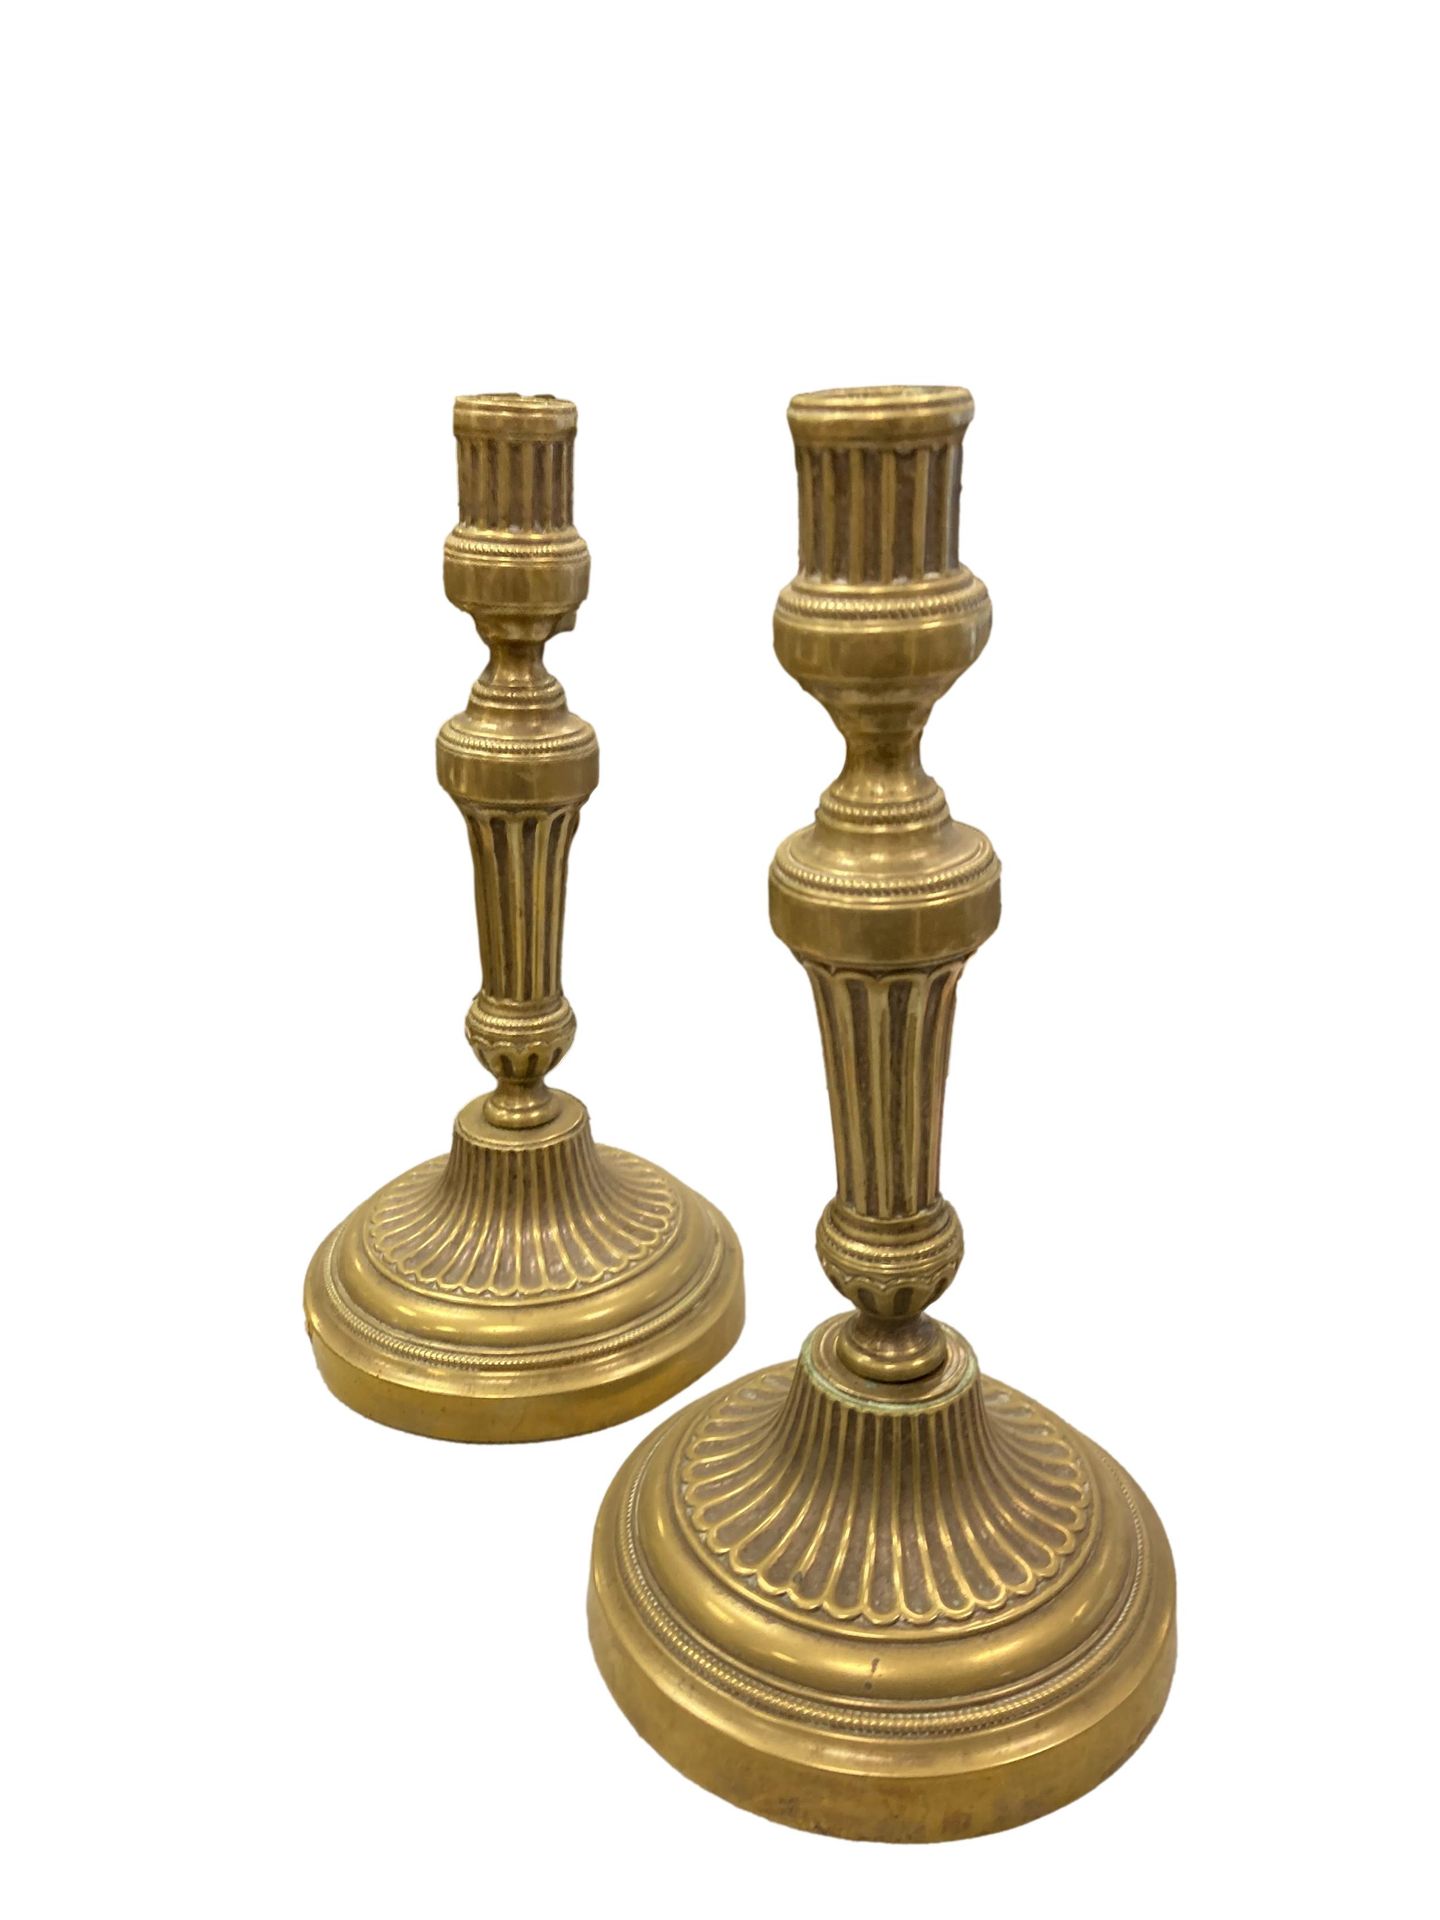 Null Paare von Kerzenhaltern aus vergoldeter Bronze mit Kanneluren.

H. 27 cm